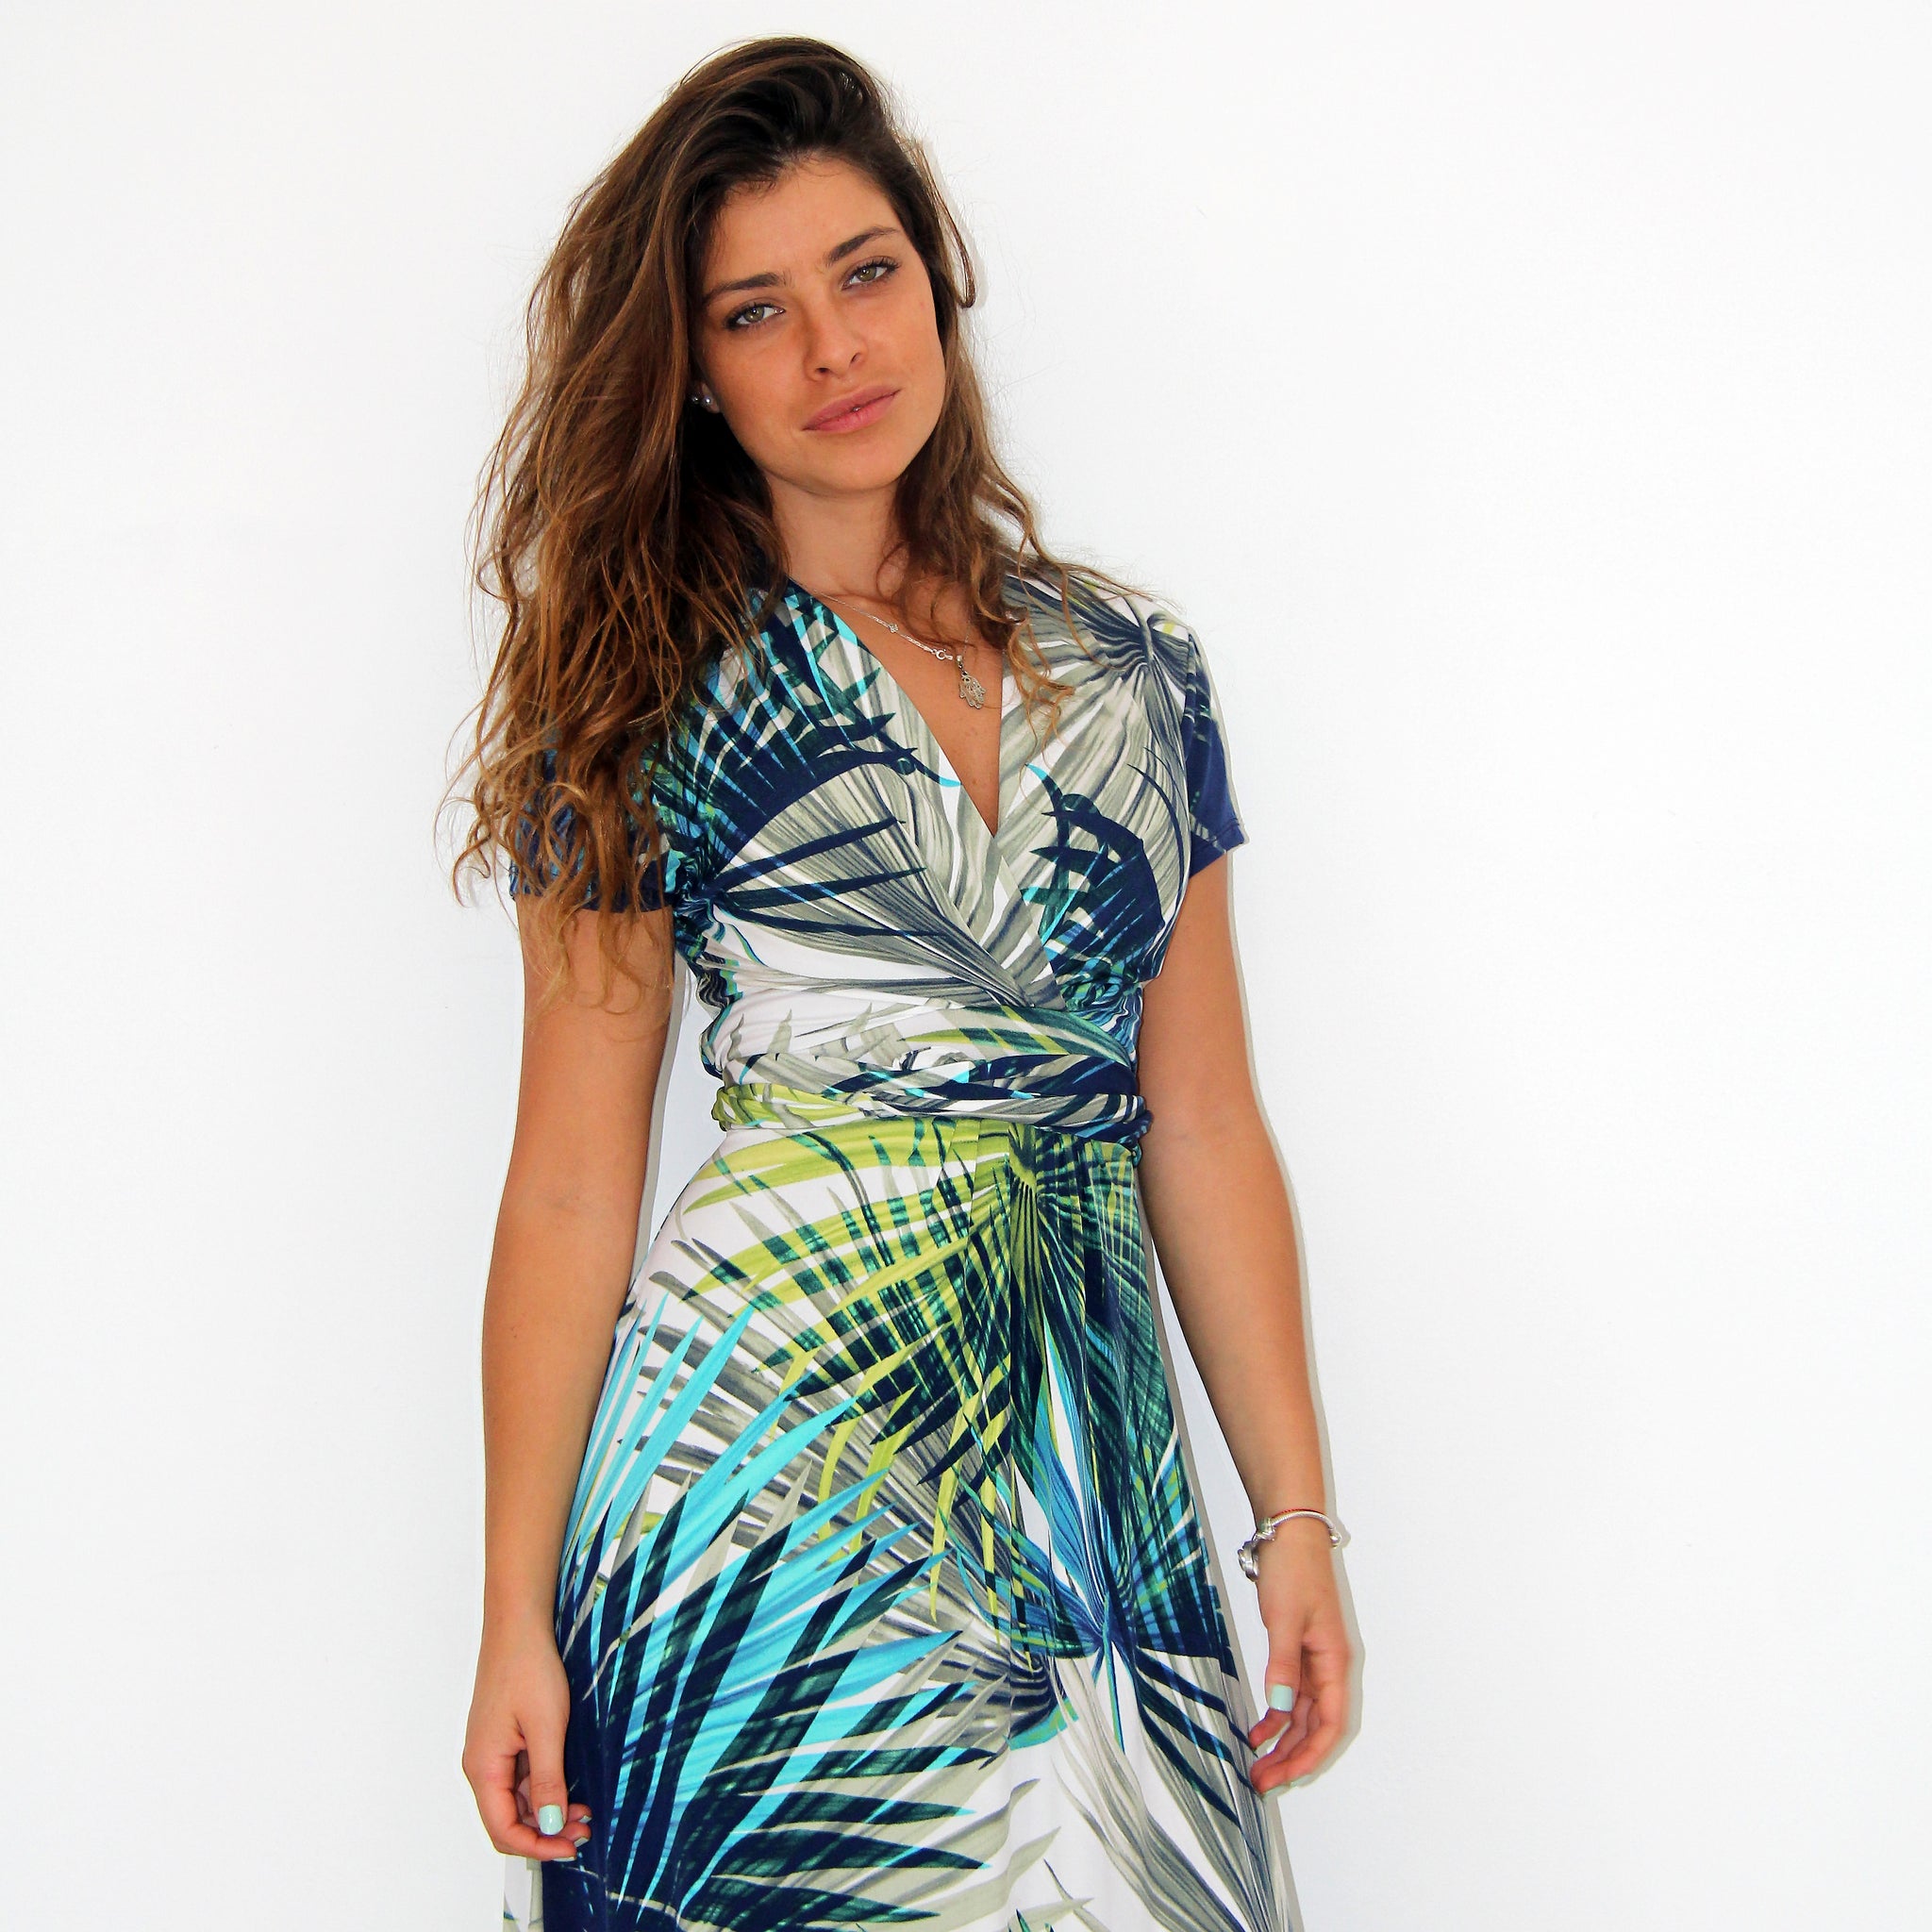 Tropical Island Maxi Dress - Rebecca Ruby